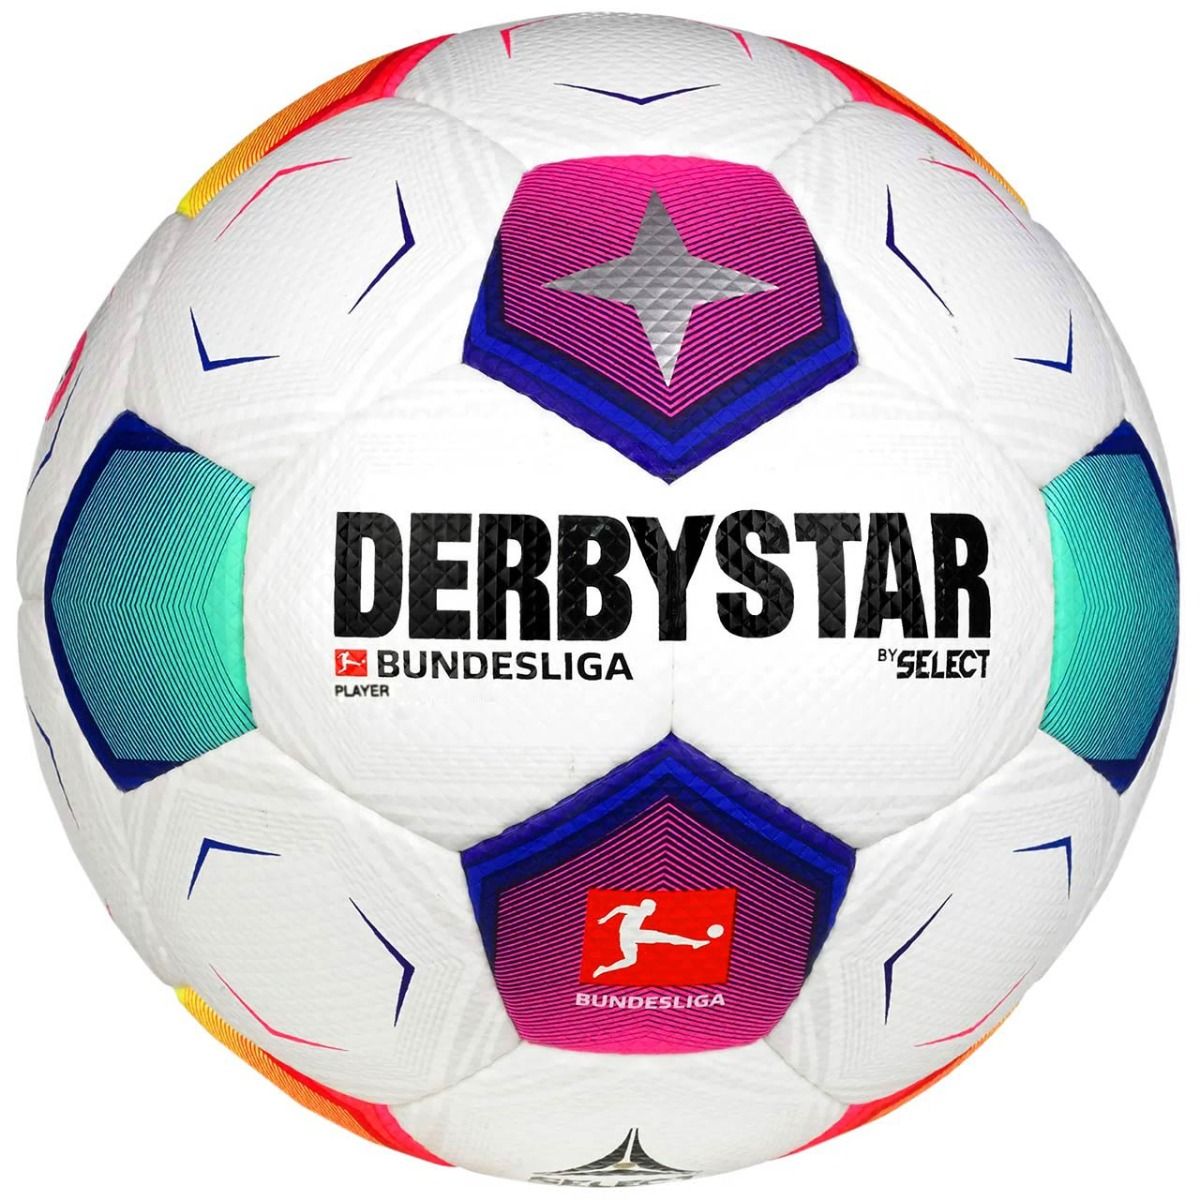 Select Futbalová lopta Derbystar Bundesliga Player v23 18178